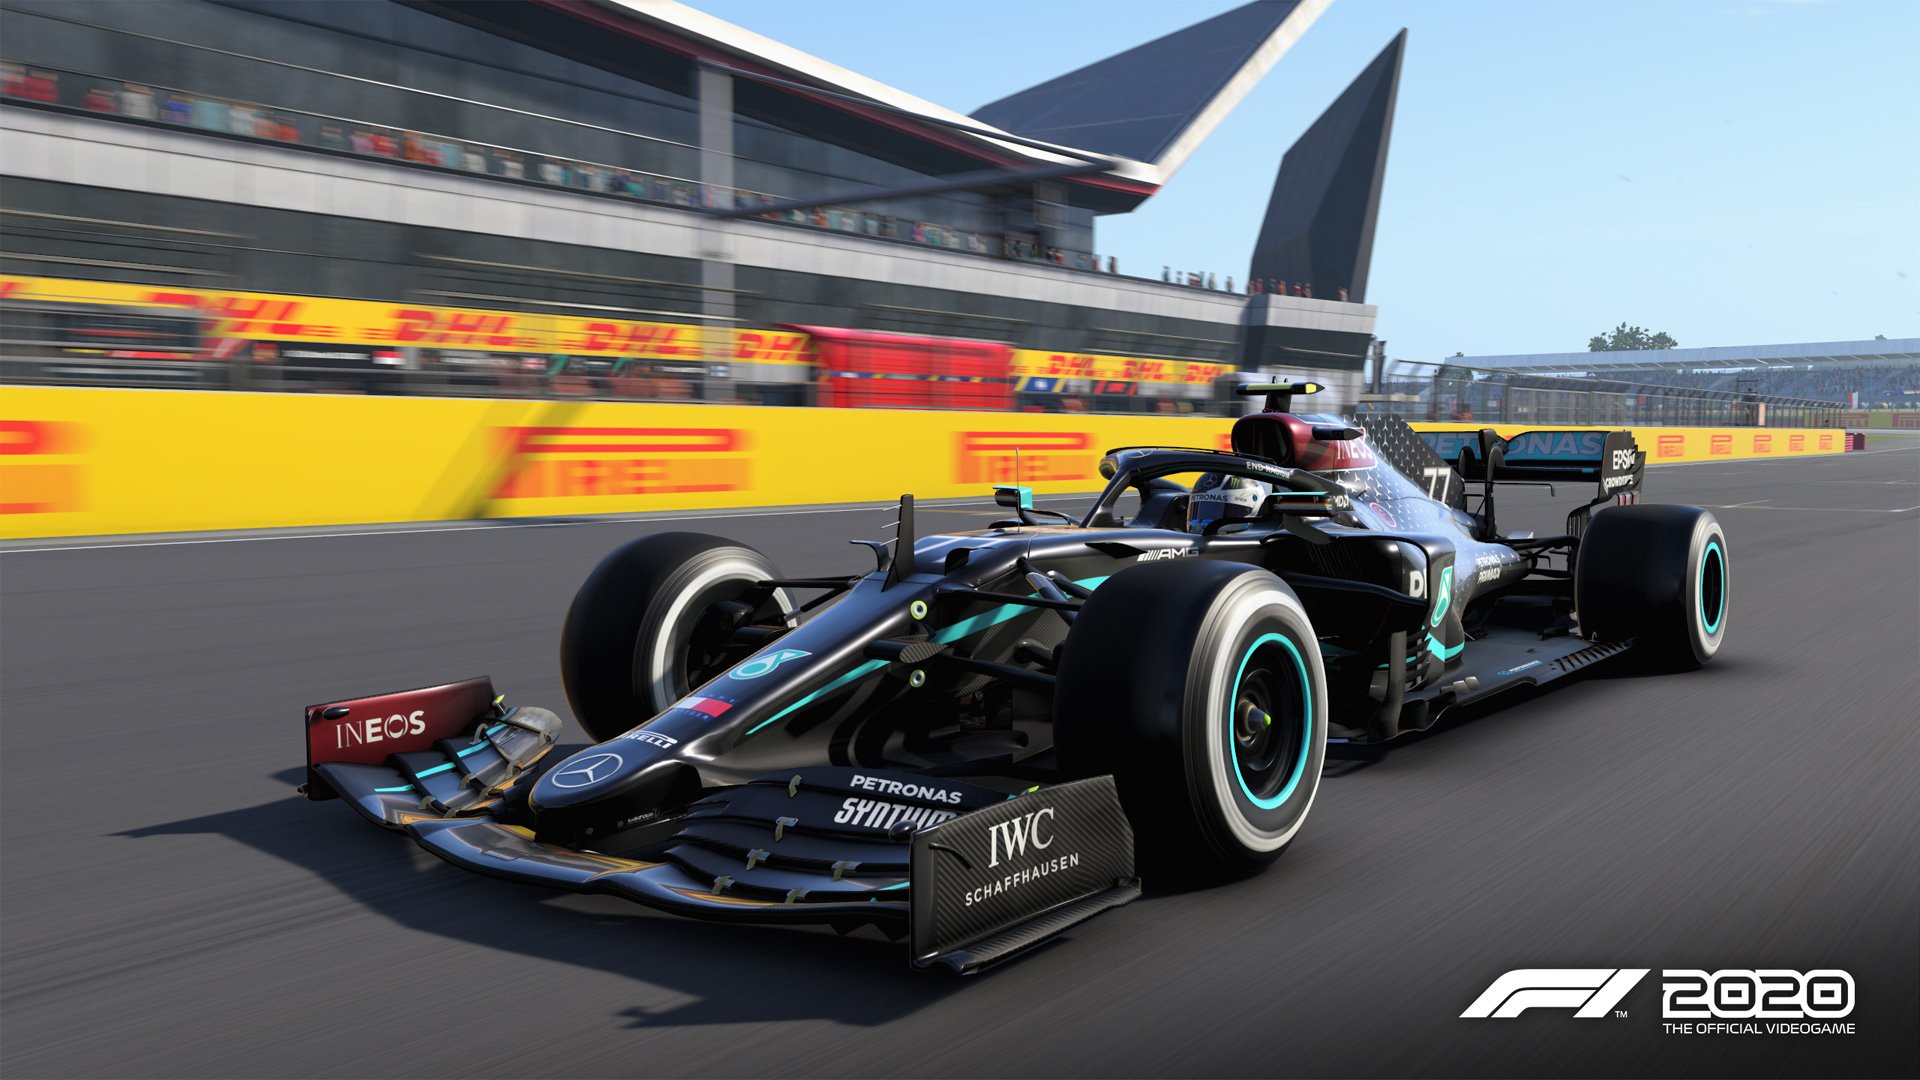 F1 2021: confira as principais novidades e modos do game de corrida